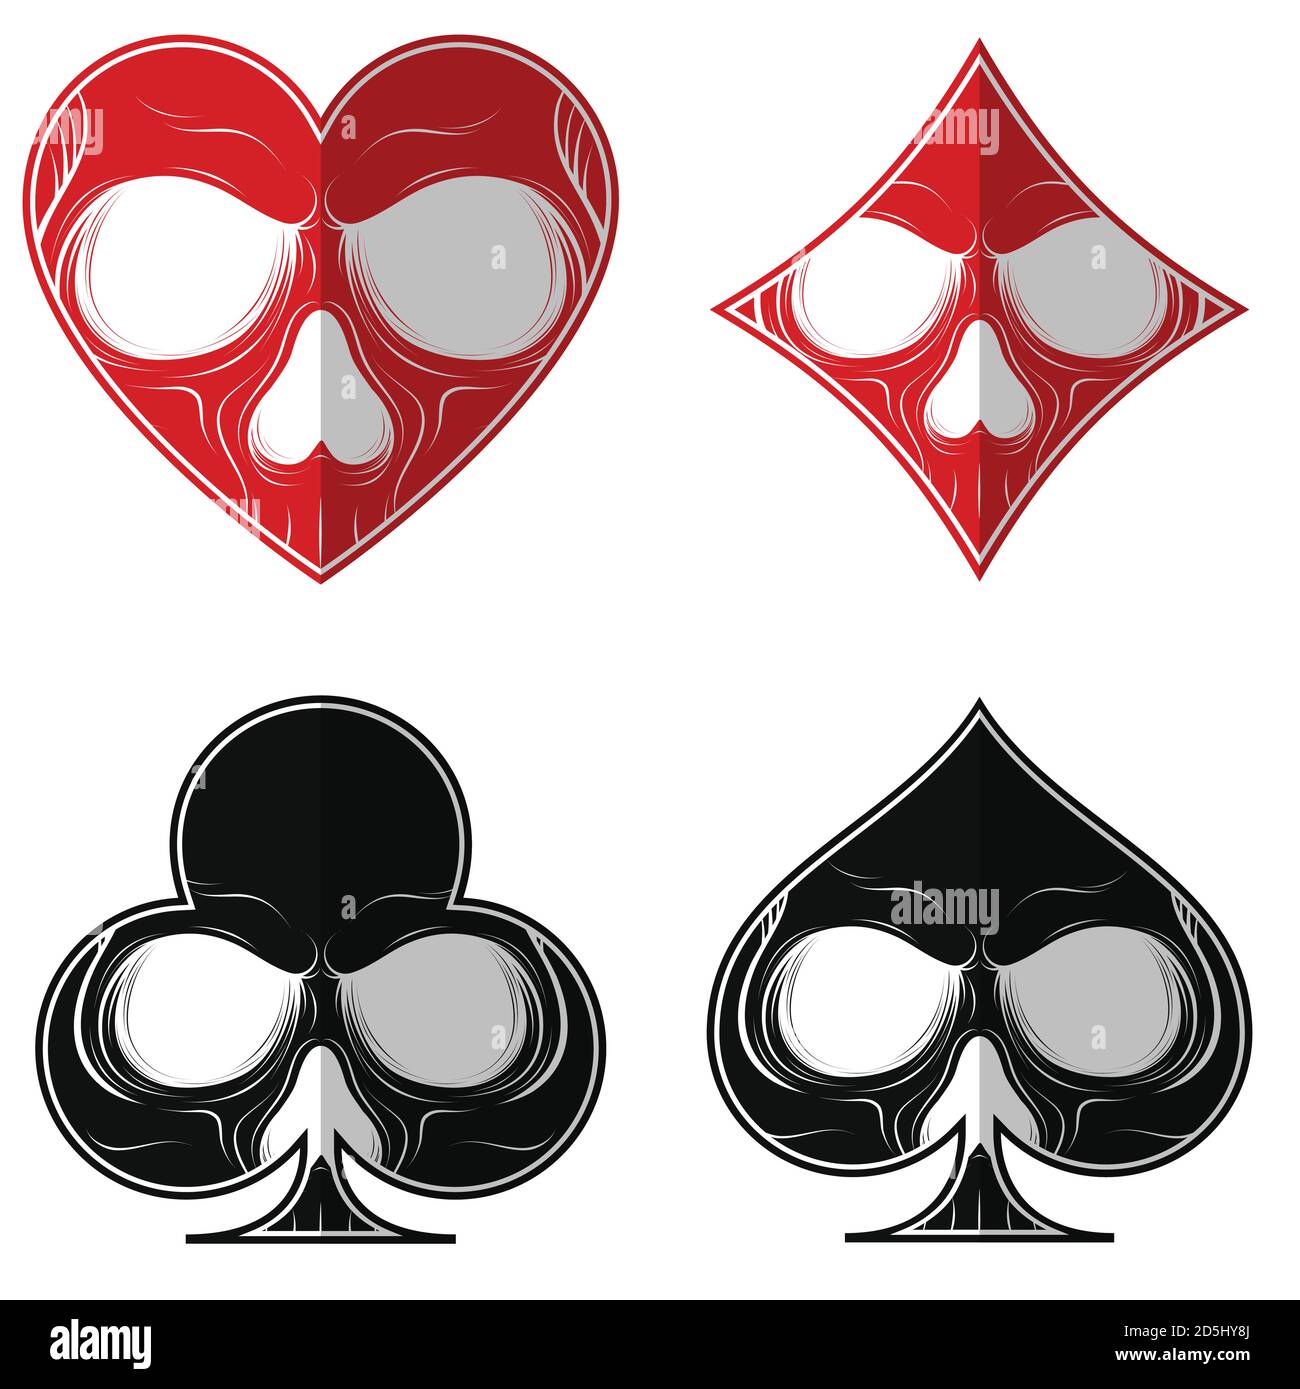 Conception vectorielle, crâne avec les quatre symboles de poker, trèfle de diamant de coeur ace, le tout sur fond blanc. Illustration de Vecteur